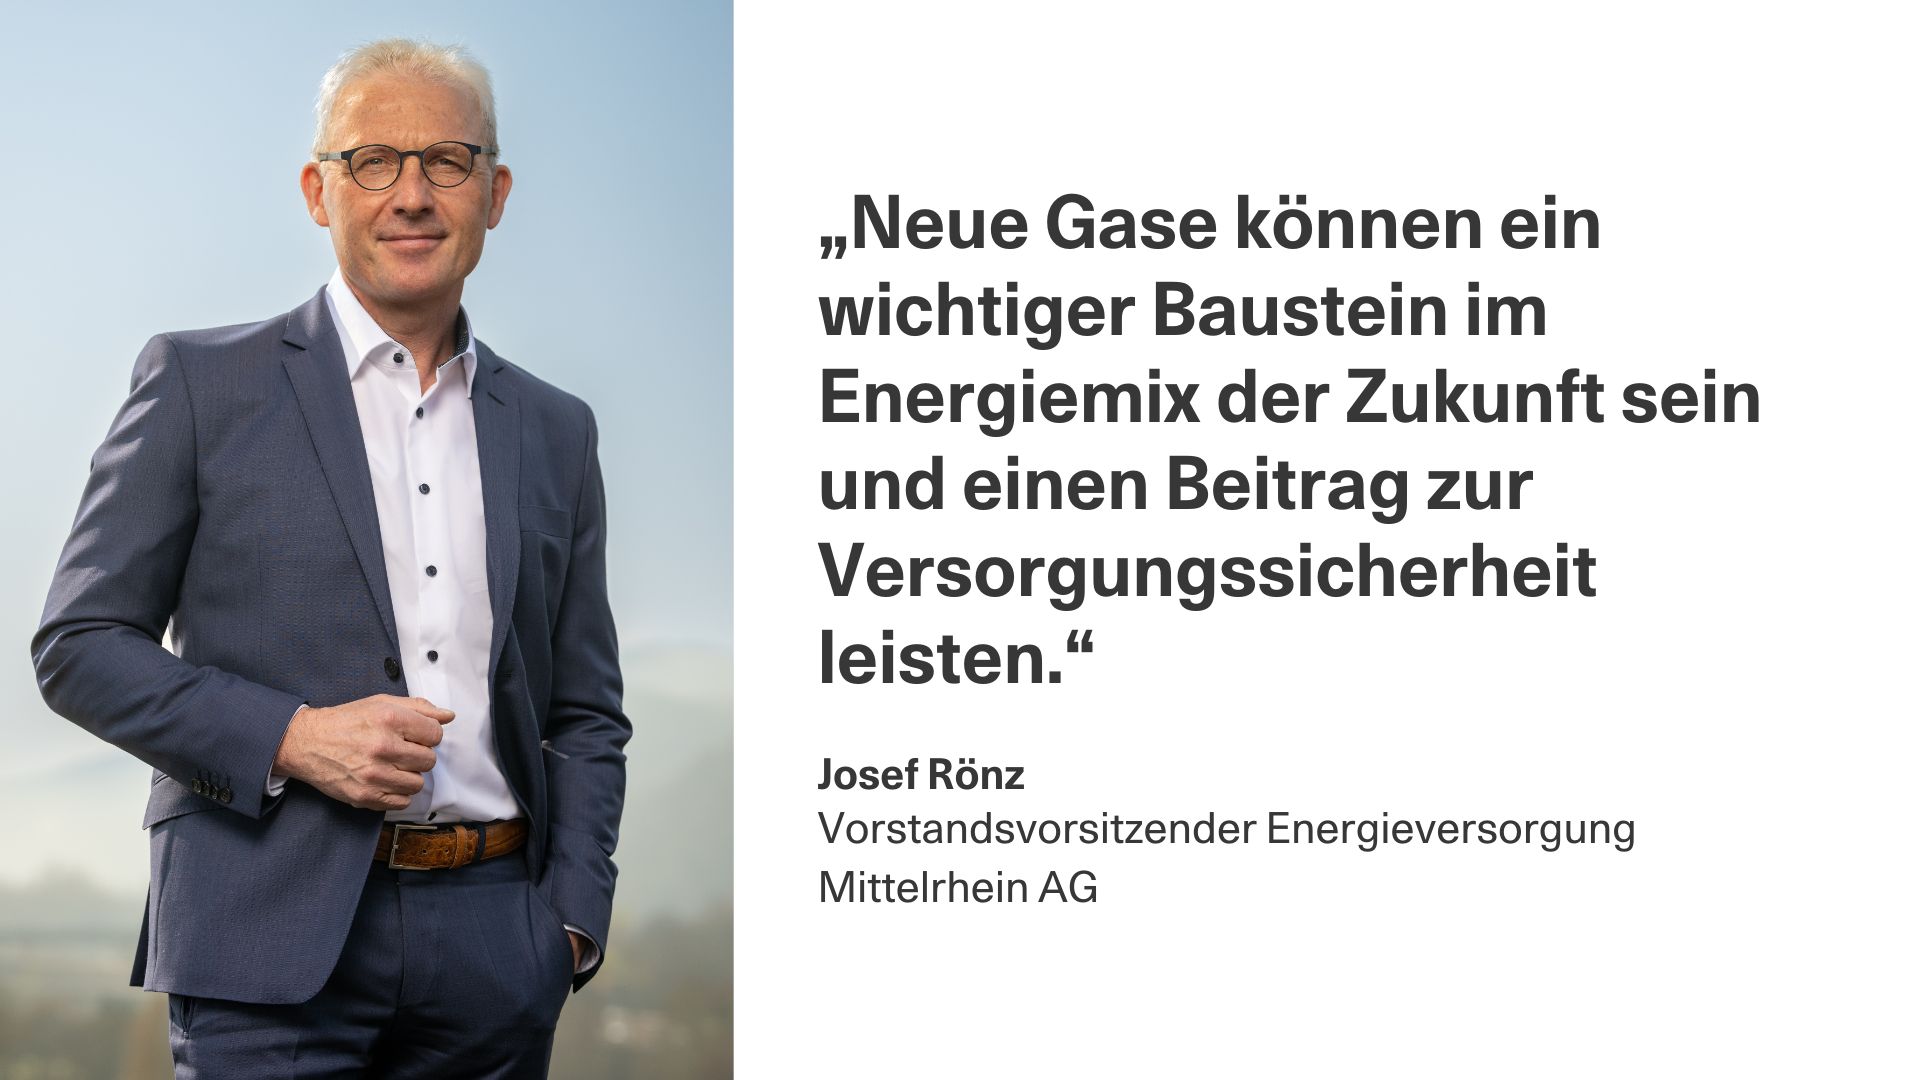 Bild: Vorstandsvorsitzender Energieversorgung Mittelrhein AG